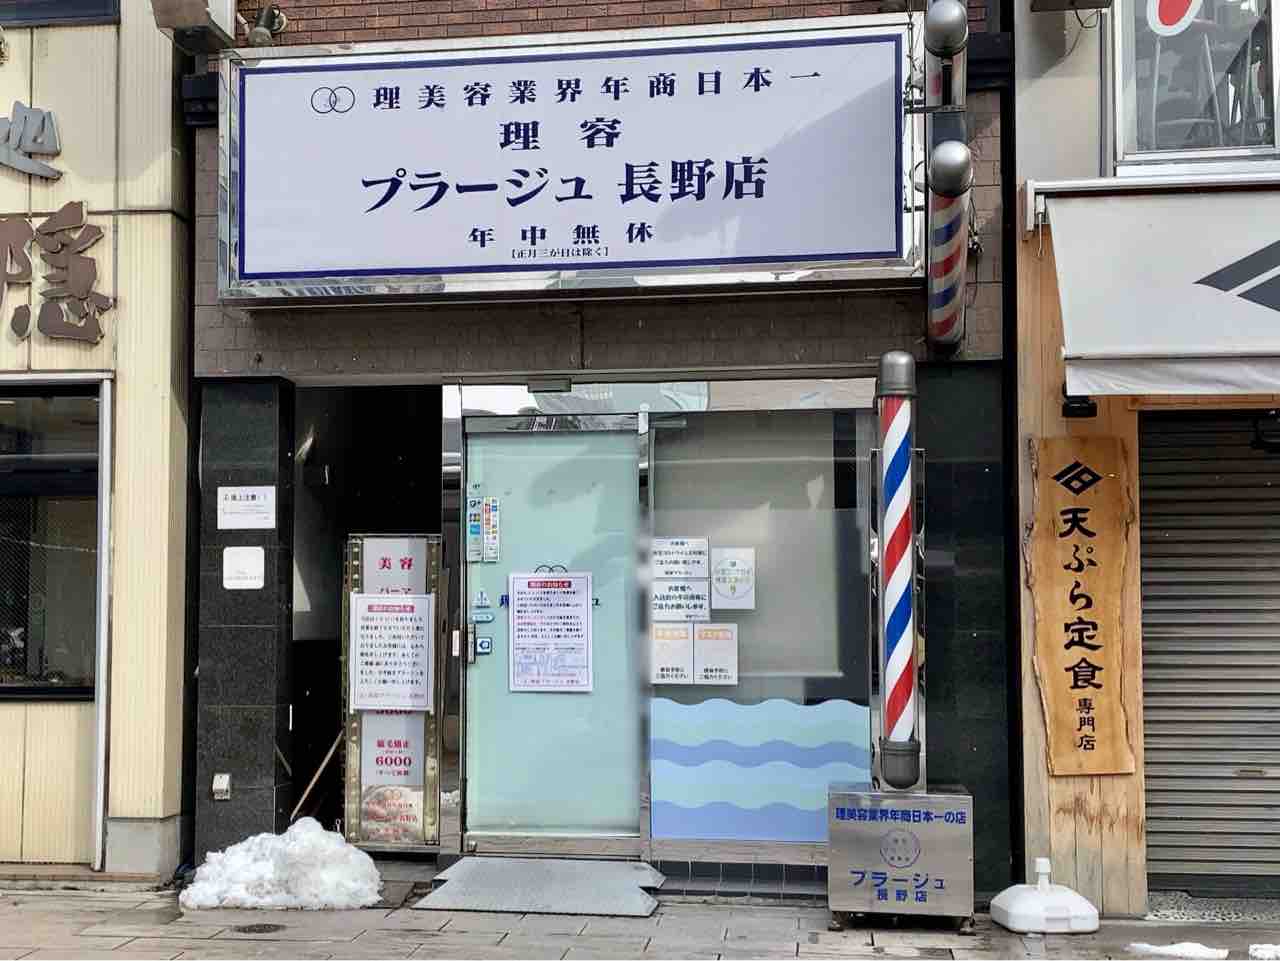 南千歳にあった理容室 プラージュ 長野店 が閉店してる ながの通信 長野県長野市の地域情報サイト